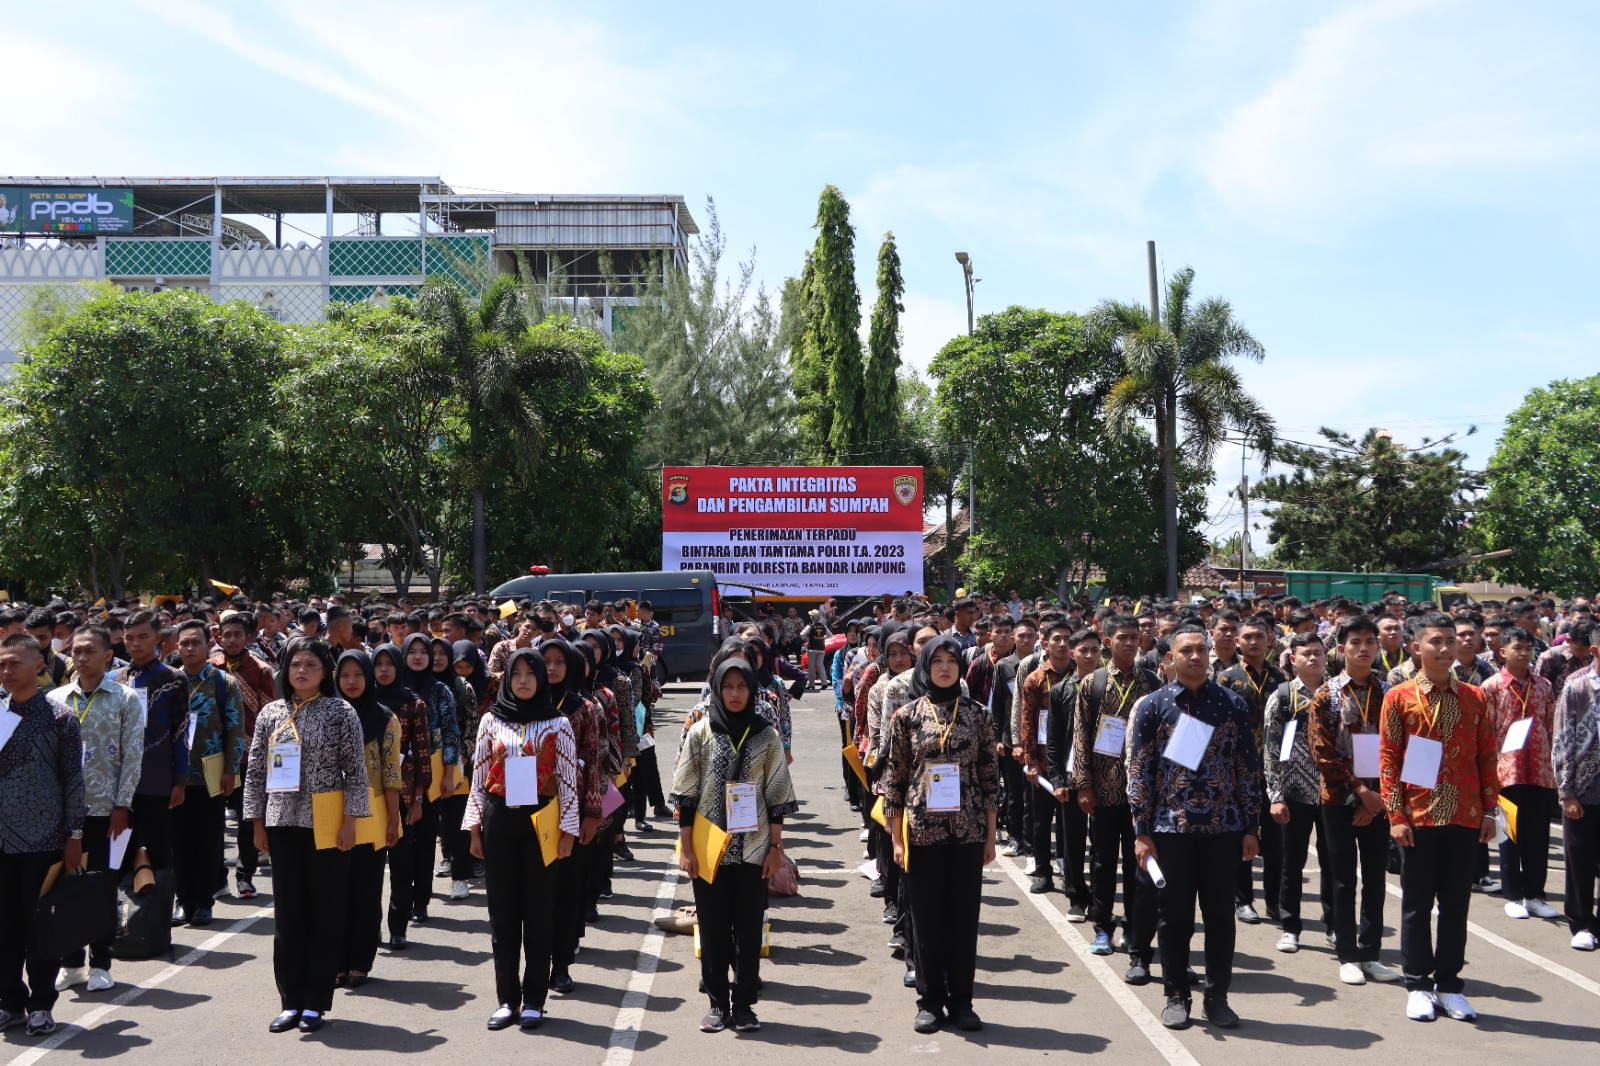 769 Calon Siswa Polri Pendaftaran Polresta Bandar Lampung Hadiri Pakta Integritas Penerimaan Polri